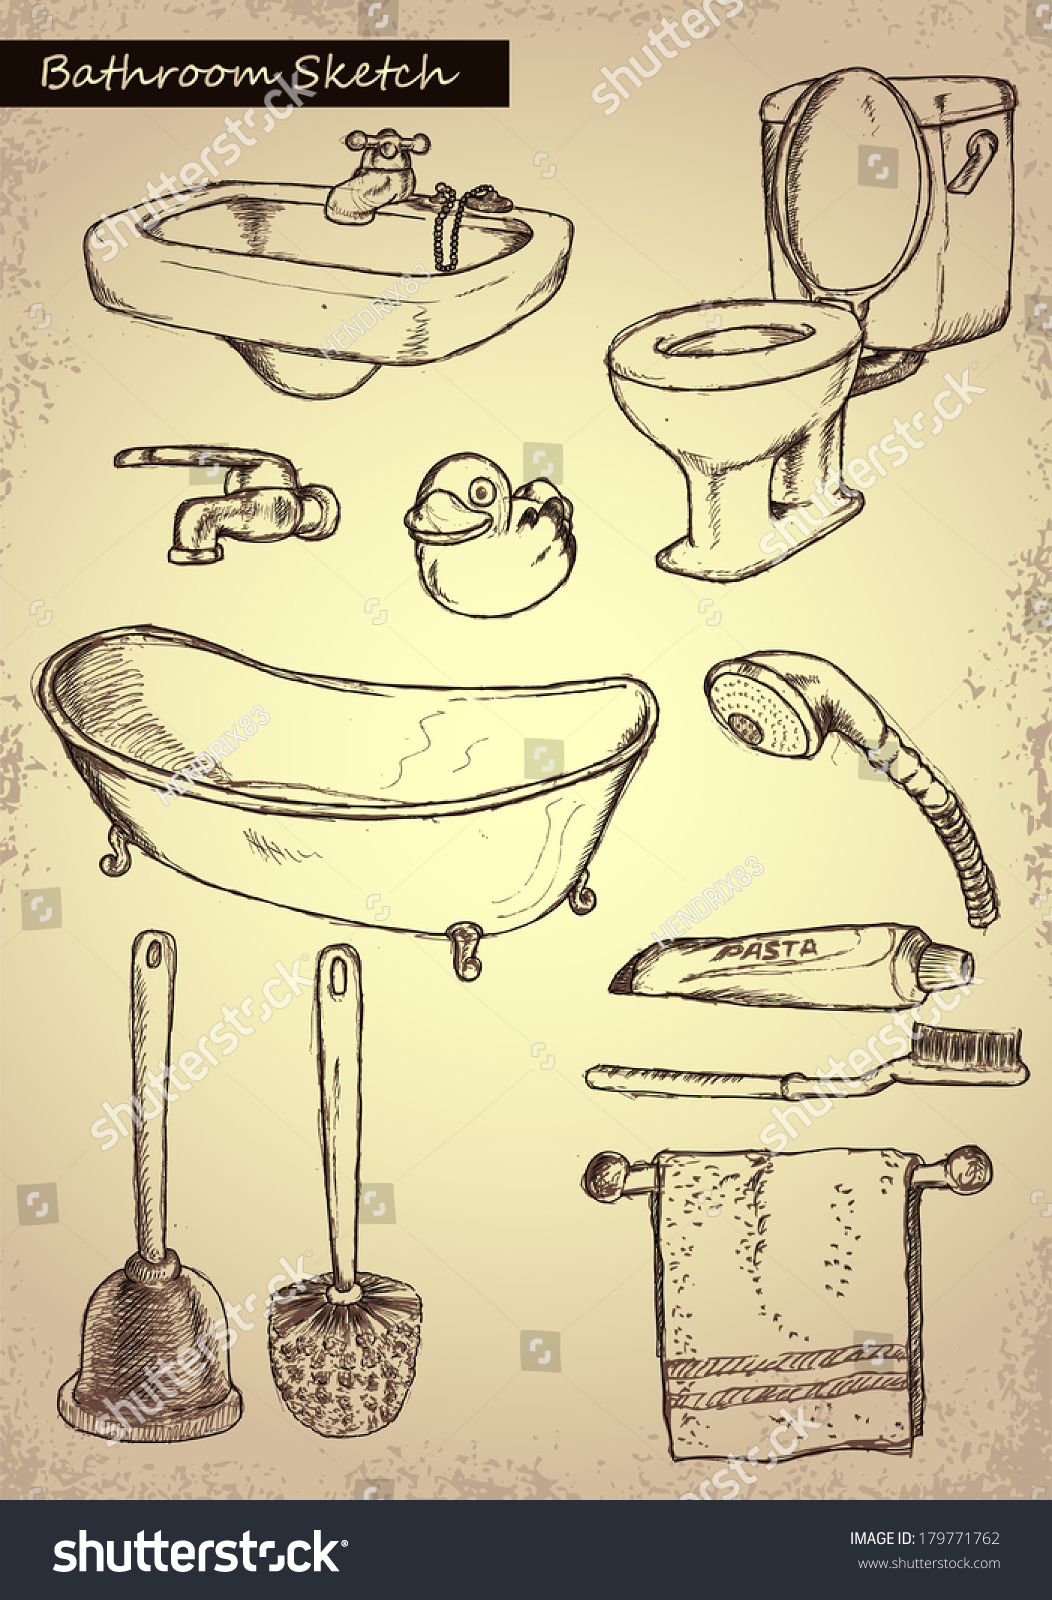  Bathroom Sketch Stock Vector Illustration 179771762 Shutterstock